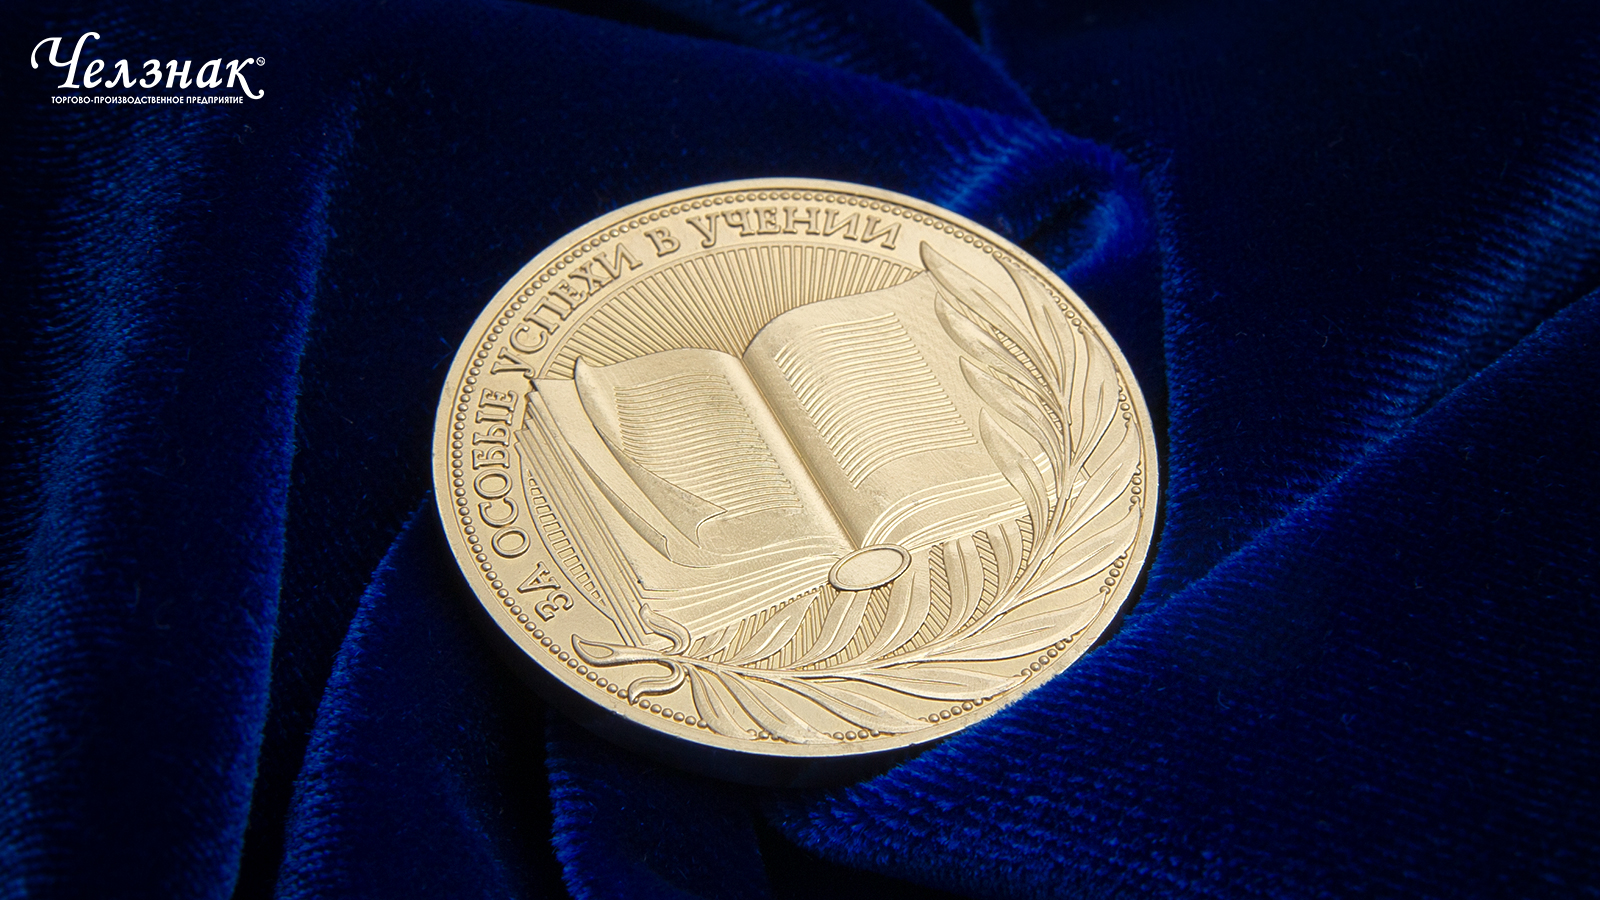 Фото медаль за особые успехи в учении